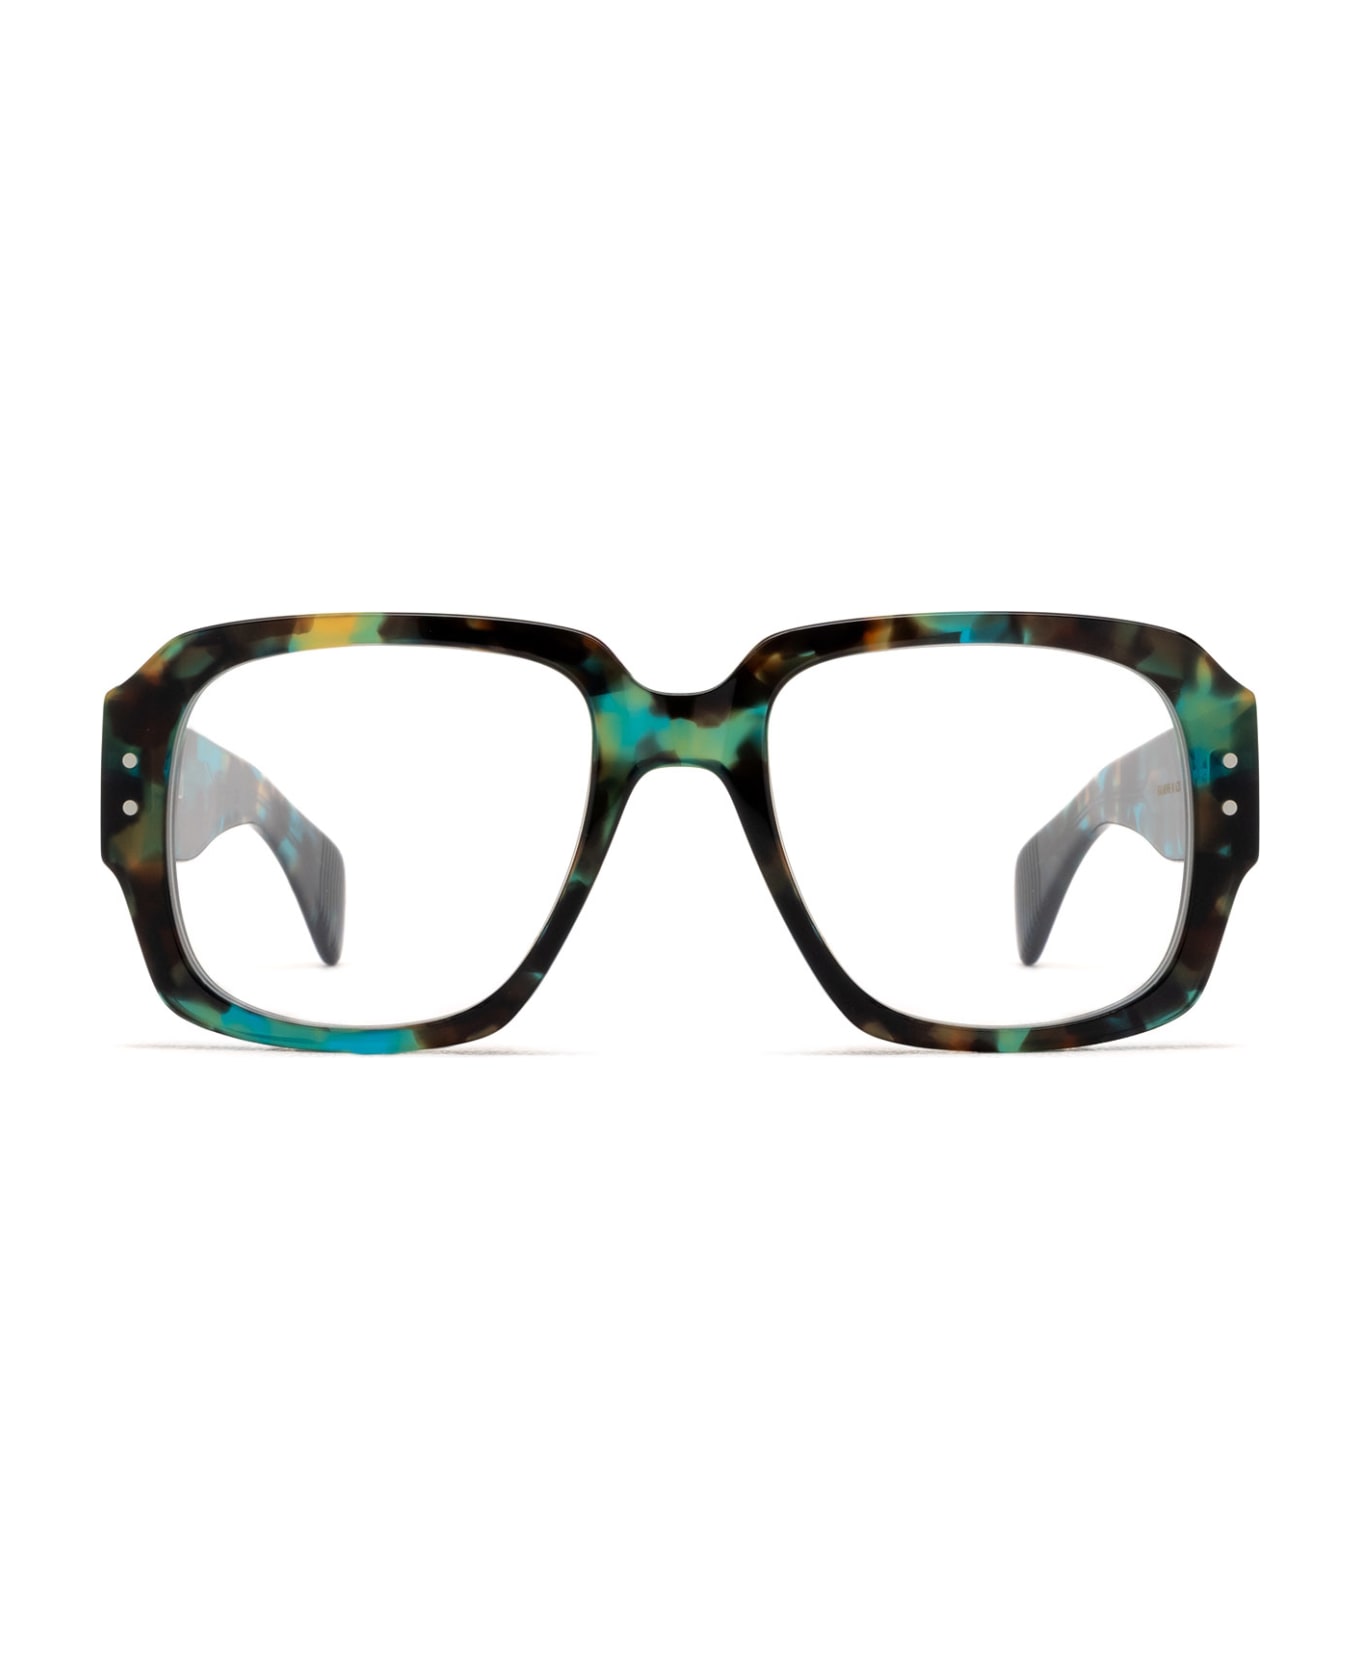 Cubitts Balmore Azure Turtle Glasses - Azure Turtle アイウェア